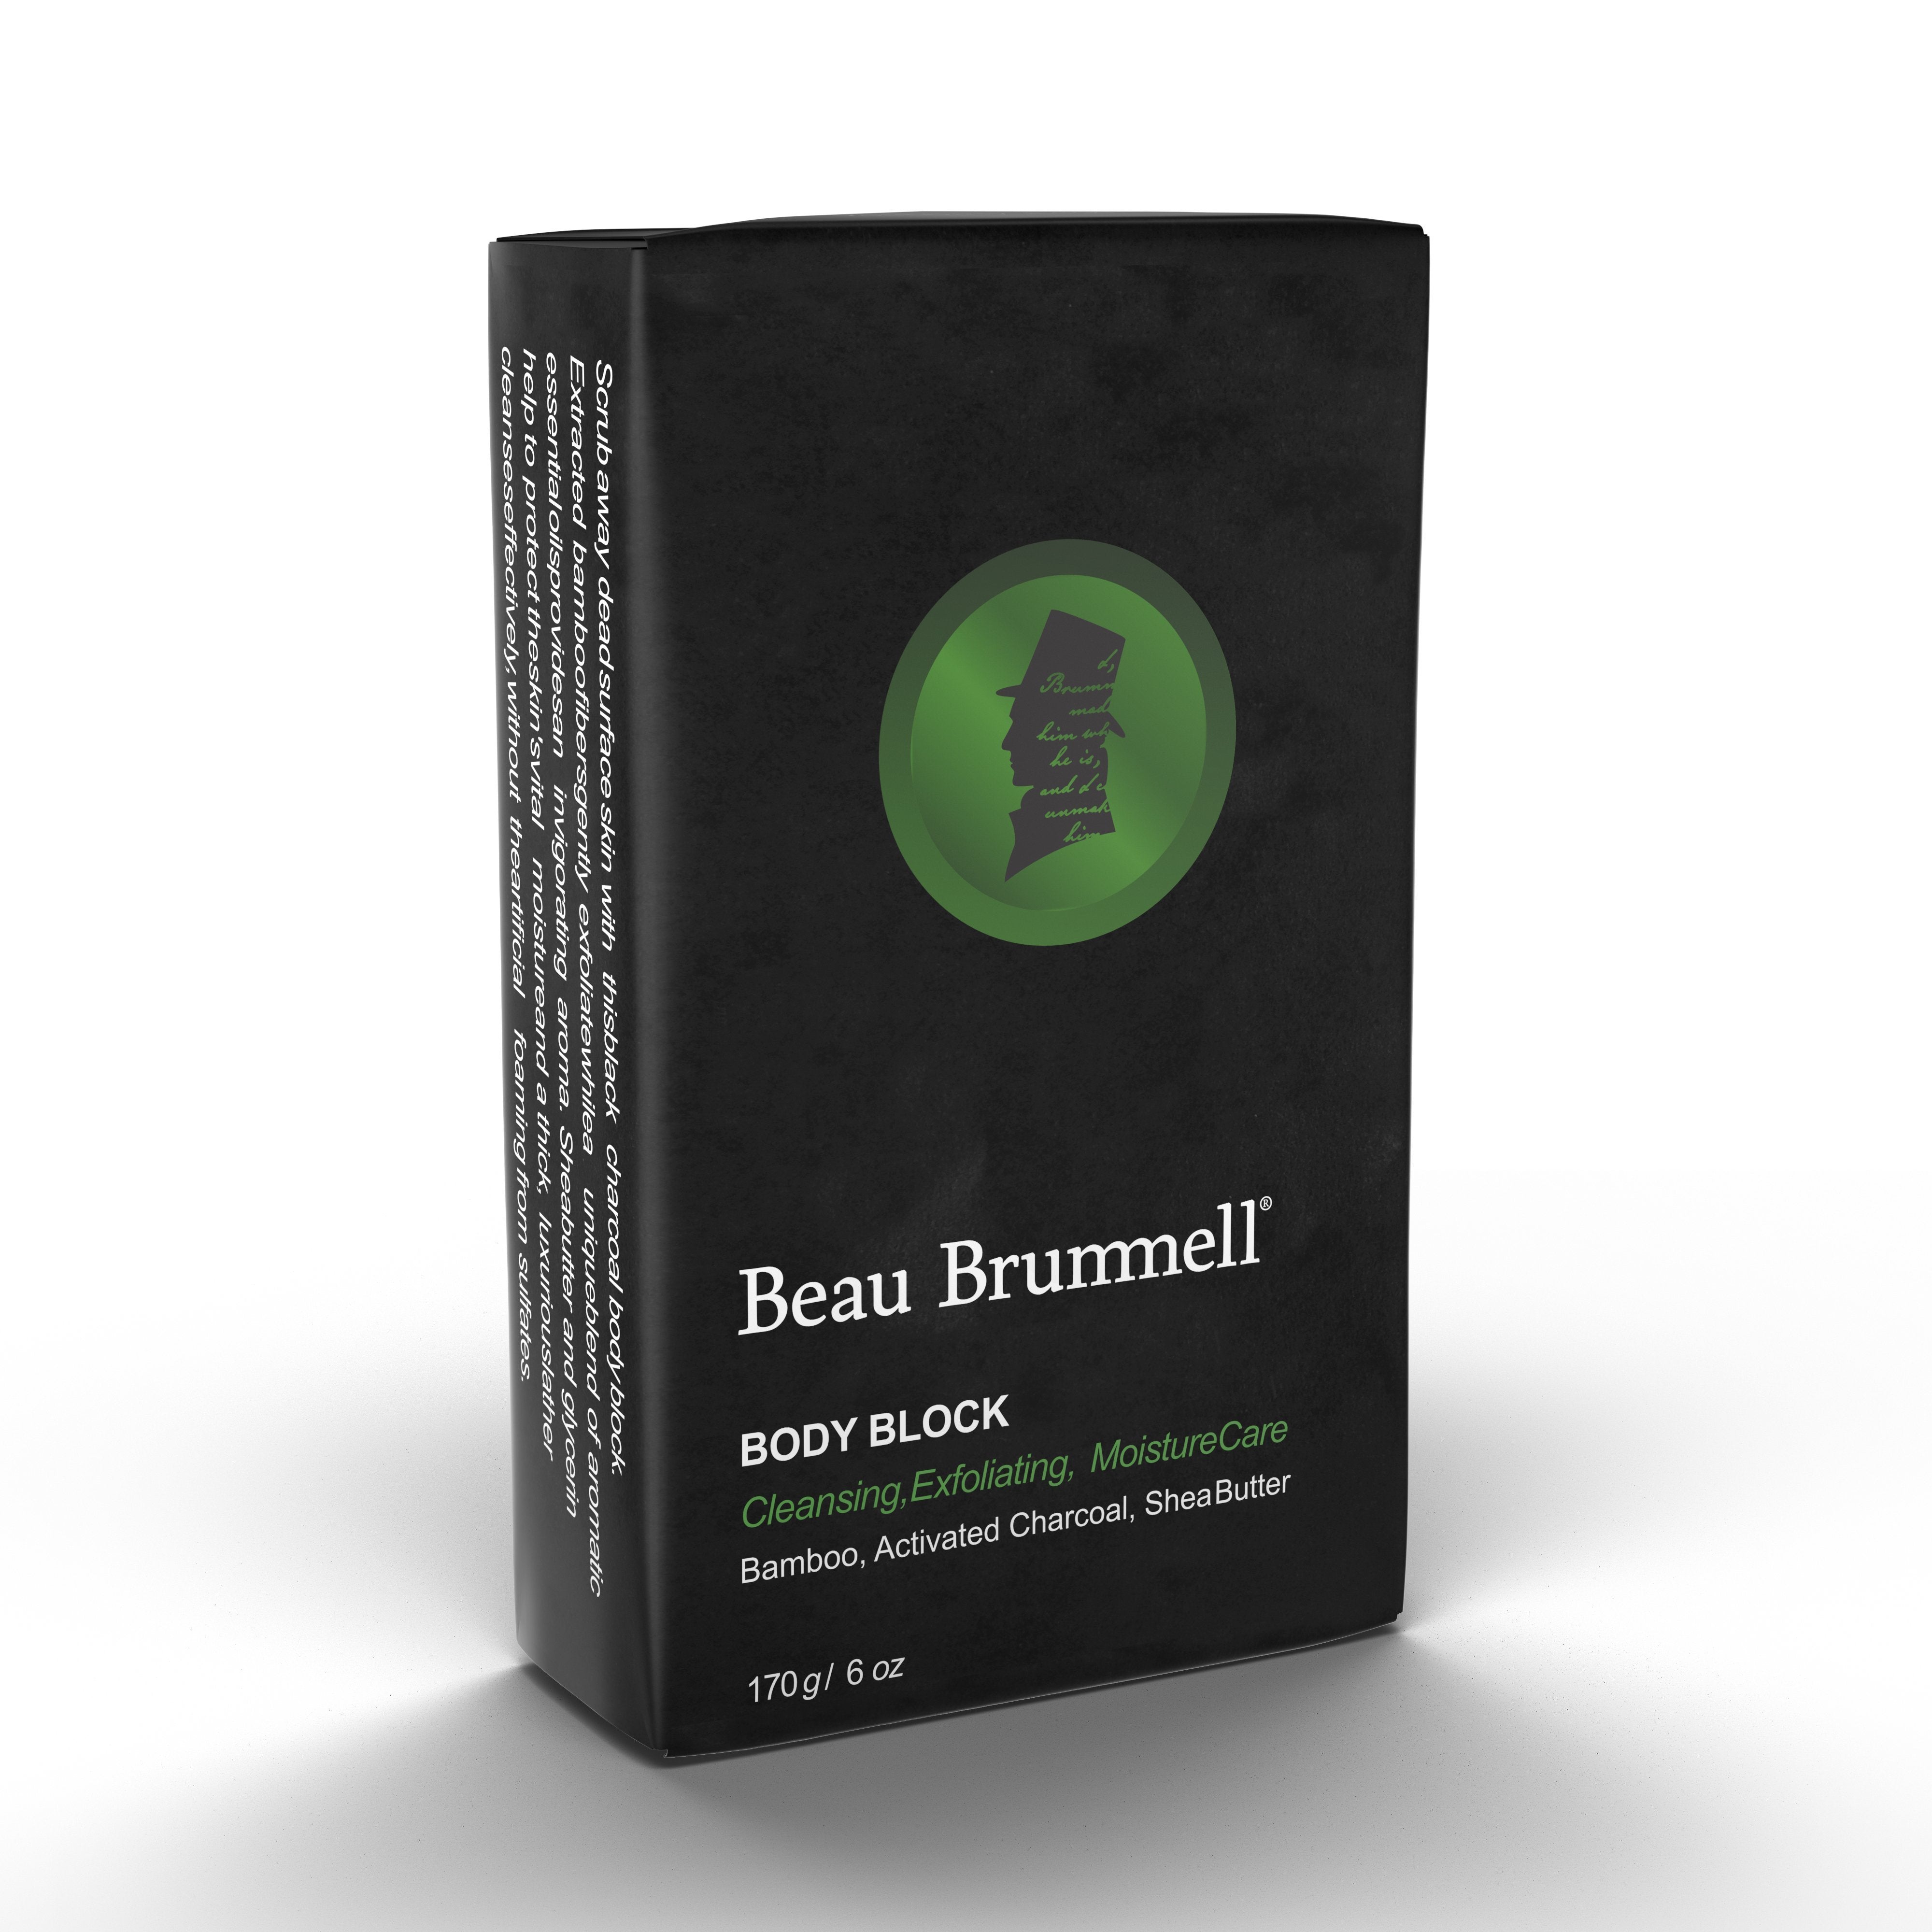 Beau Brummell Shower Body Block